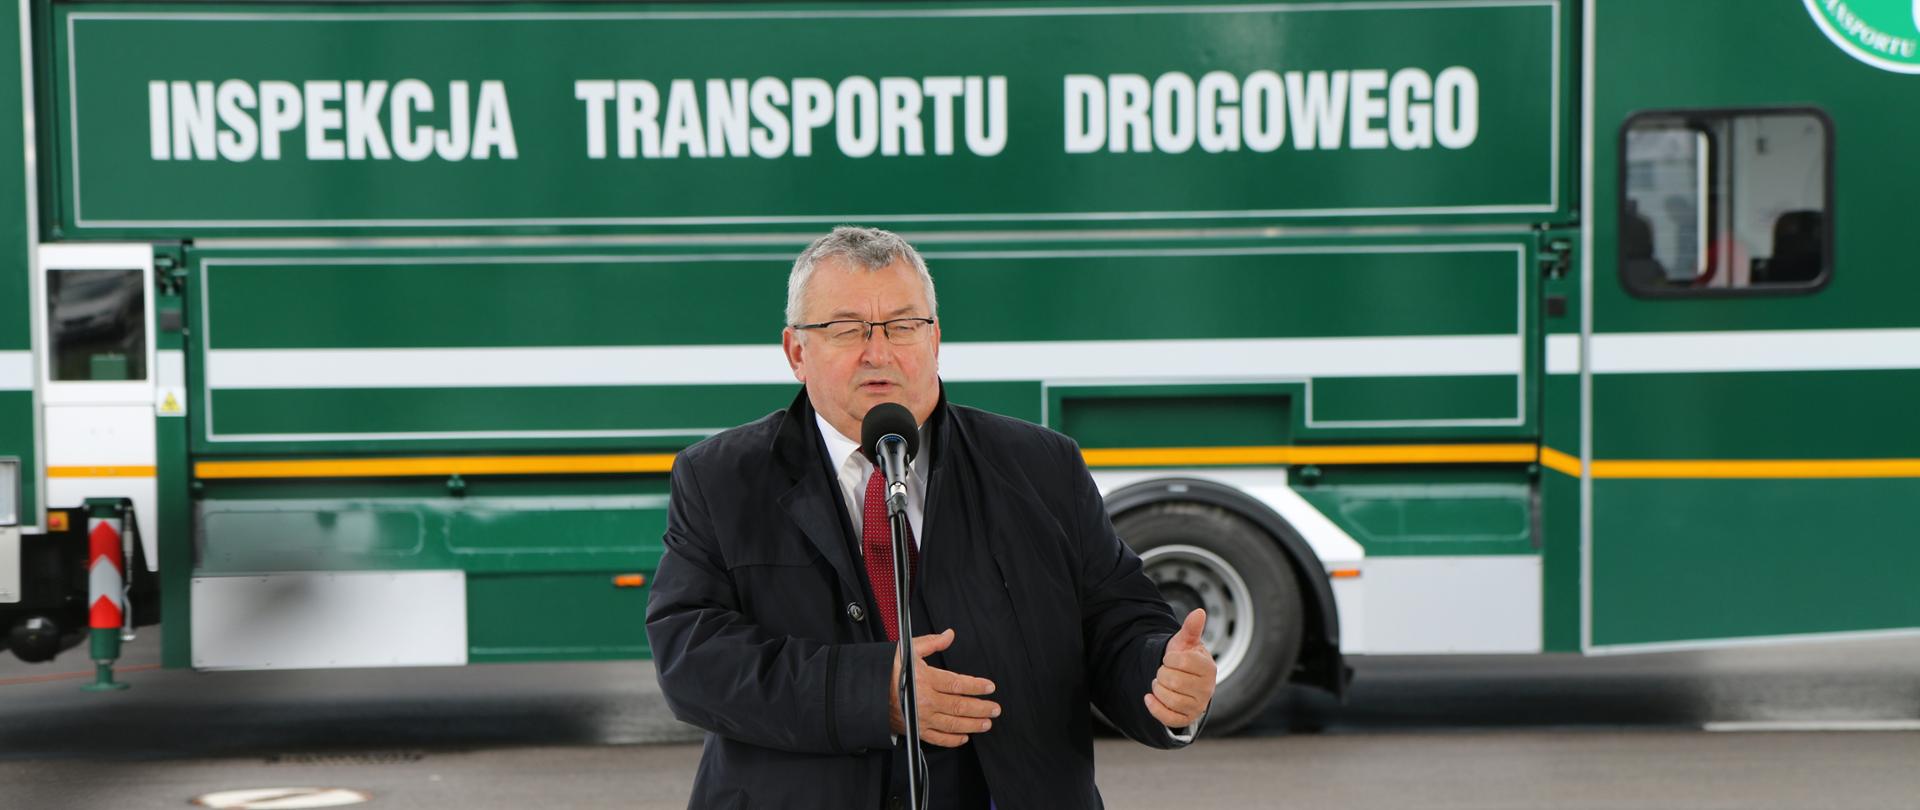 W Miechowie powstał oddział Inspekcji Transportu Drogowego